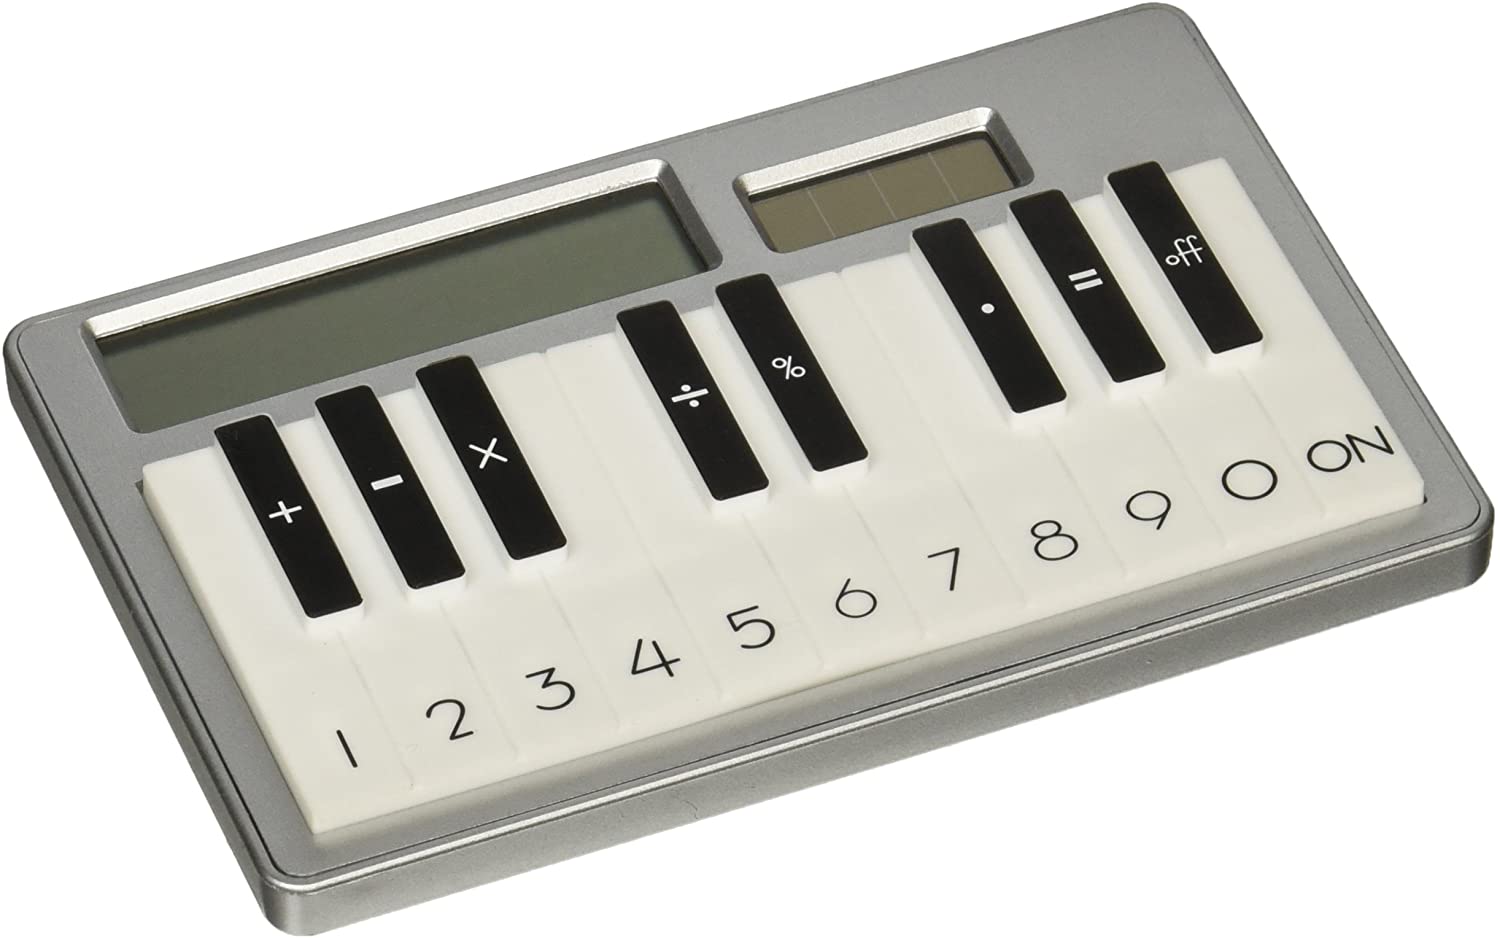 Piano calculator